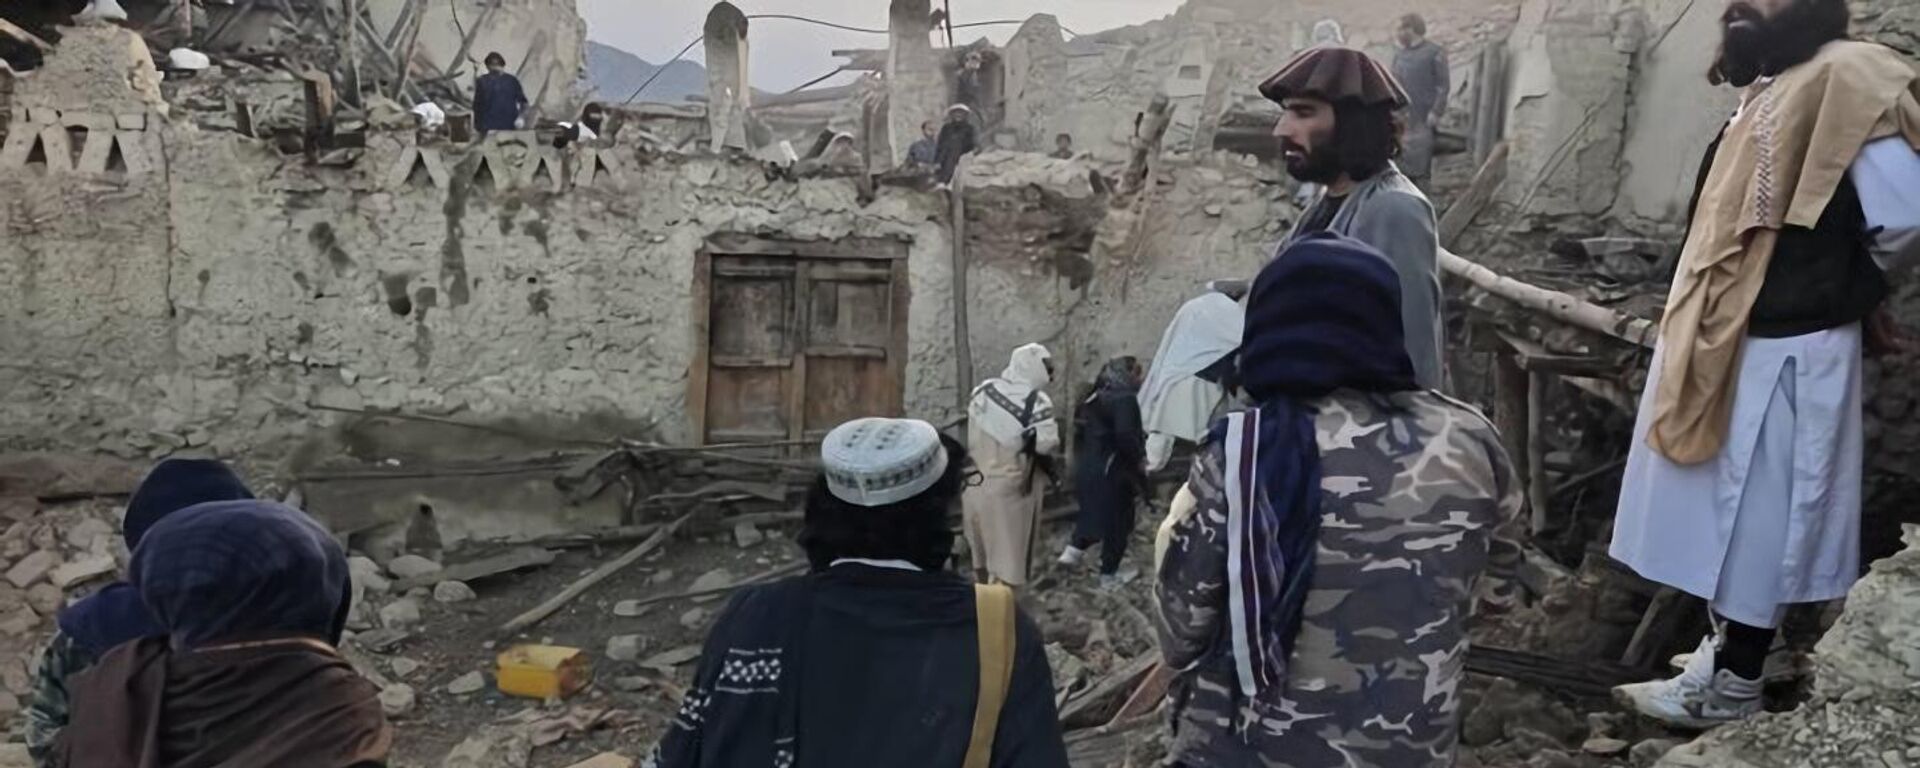 アフガニスタンでの地震の犠牲者が900人を超える - Sputnik 日本, 1920, 22.06.2022